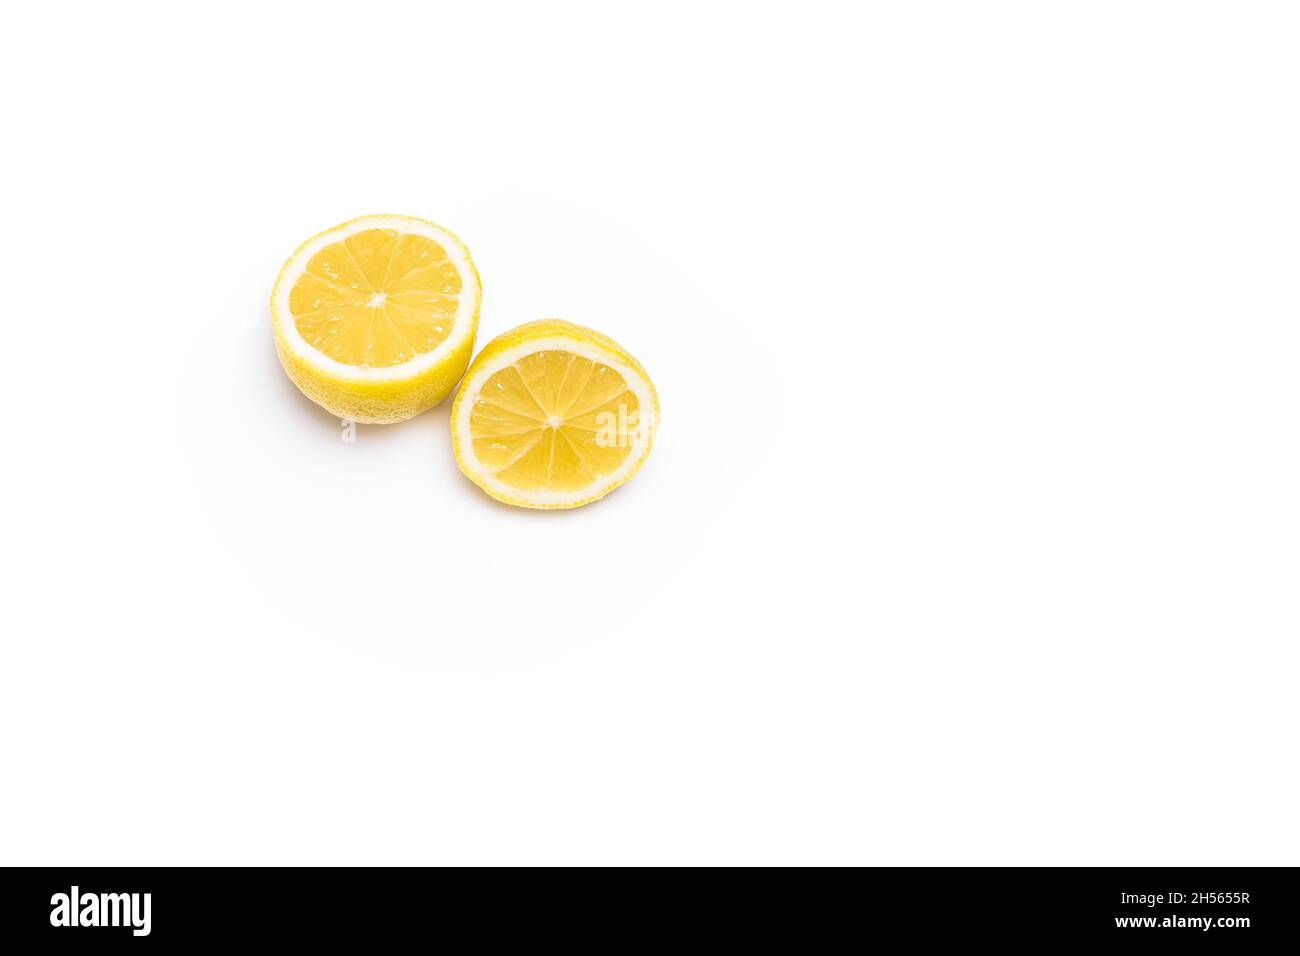 Foto von zwei Hälften gelber Zitronen auf weißem Hintergrund.das Foto hat Platz für Kopien und ist im horizontalen Format aufgenommen. Stockfoto